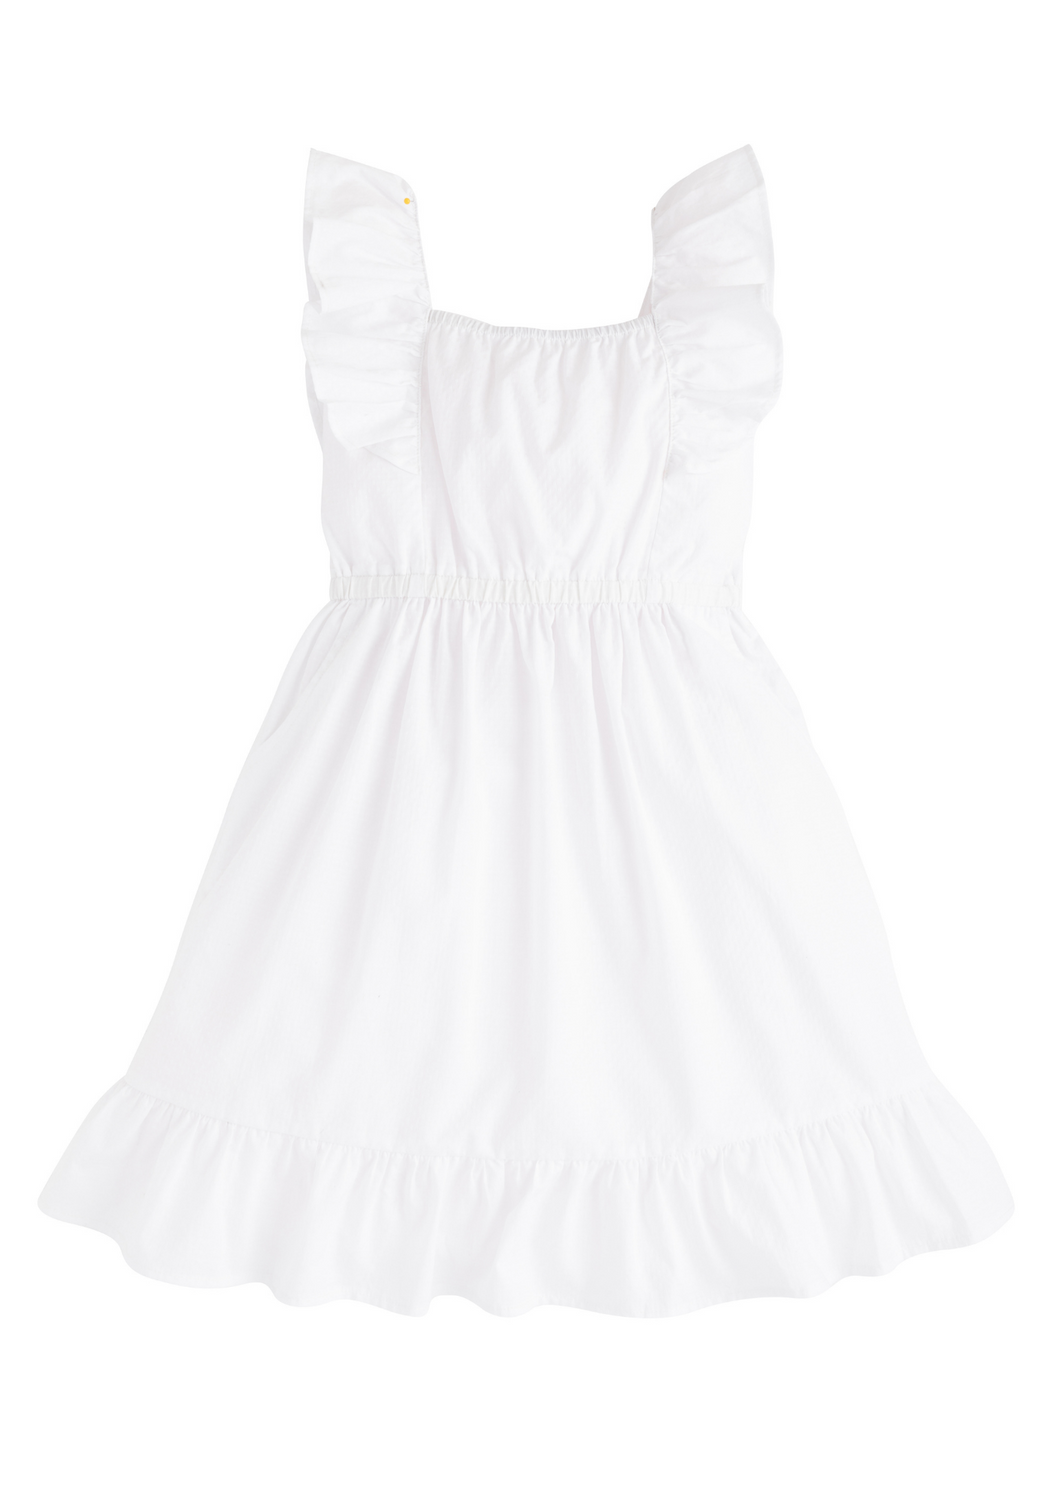 Brighton Dress- White Polka Dot